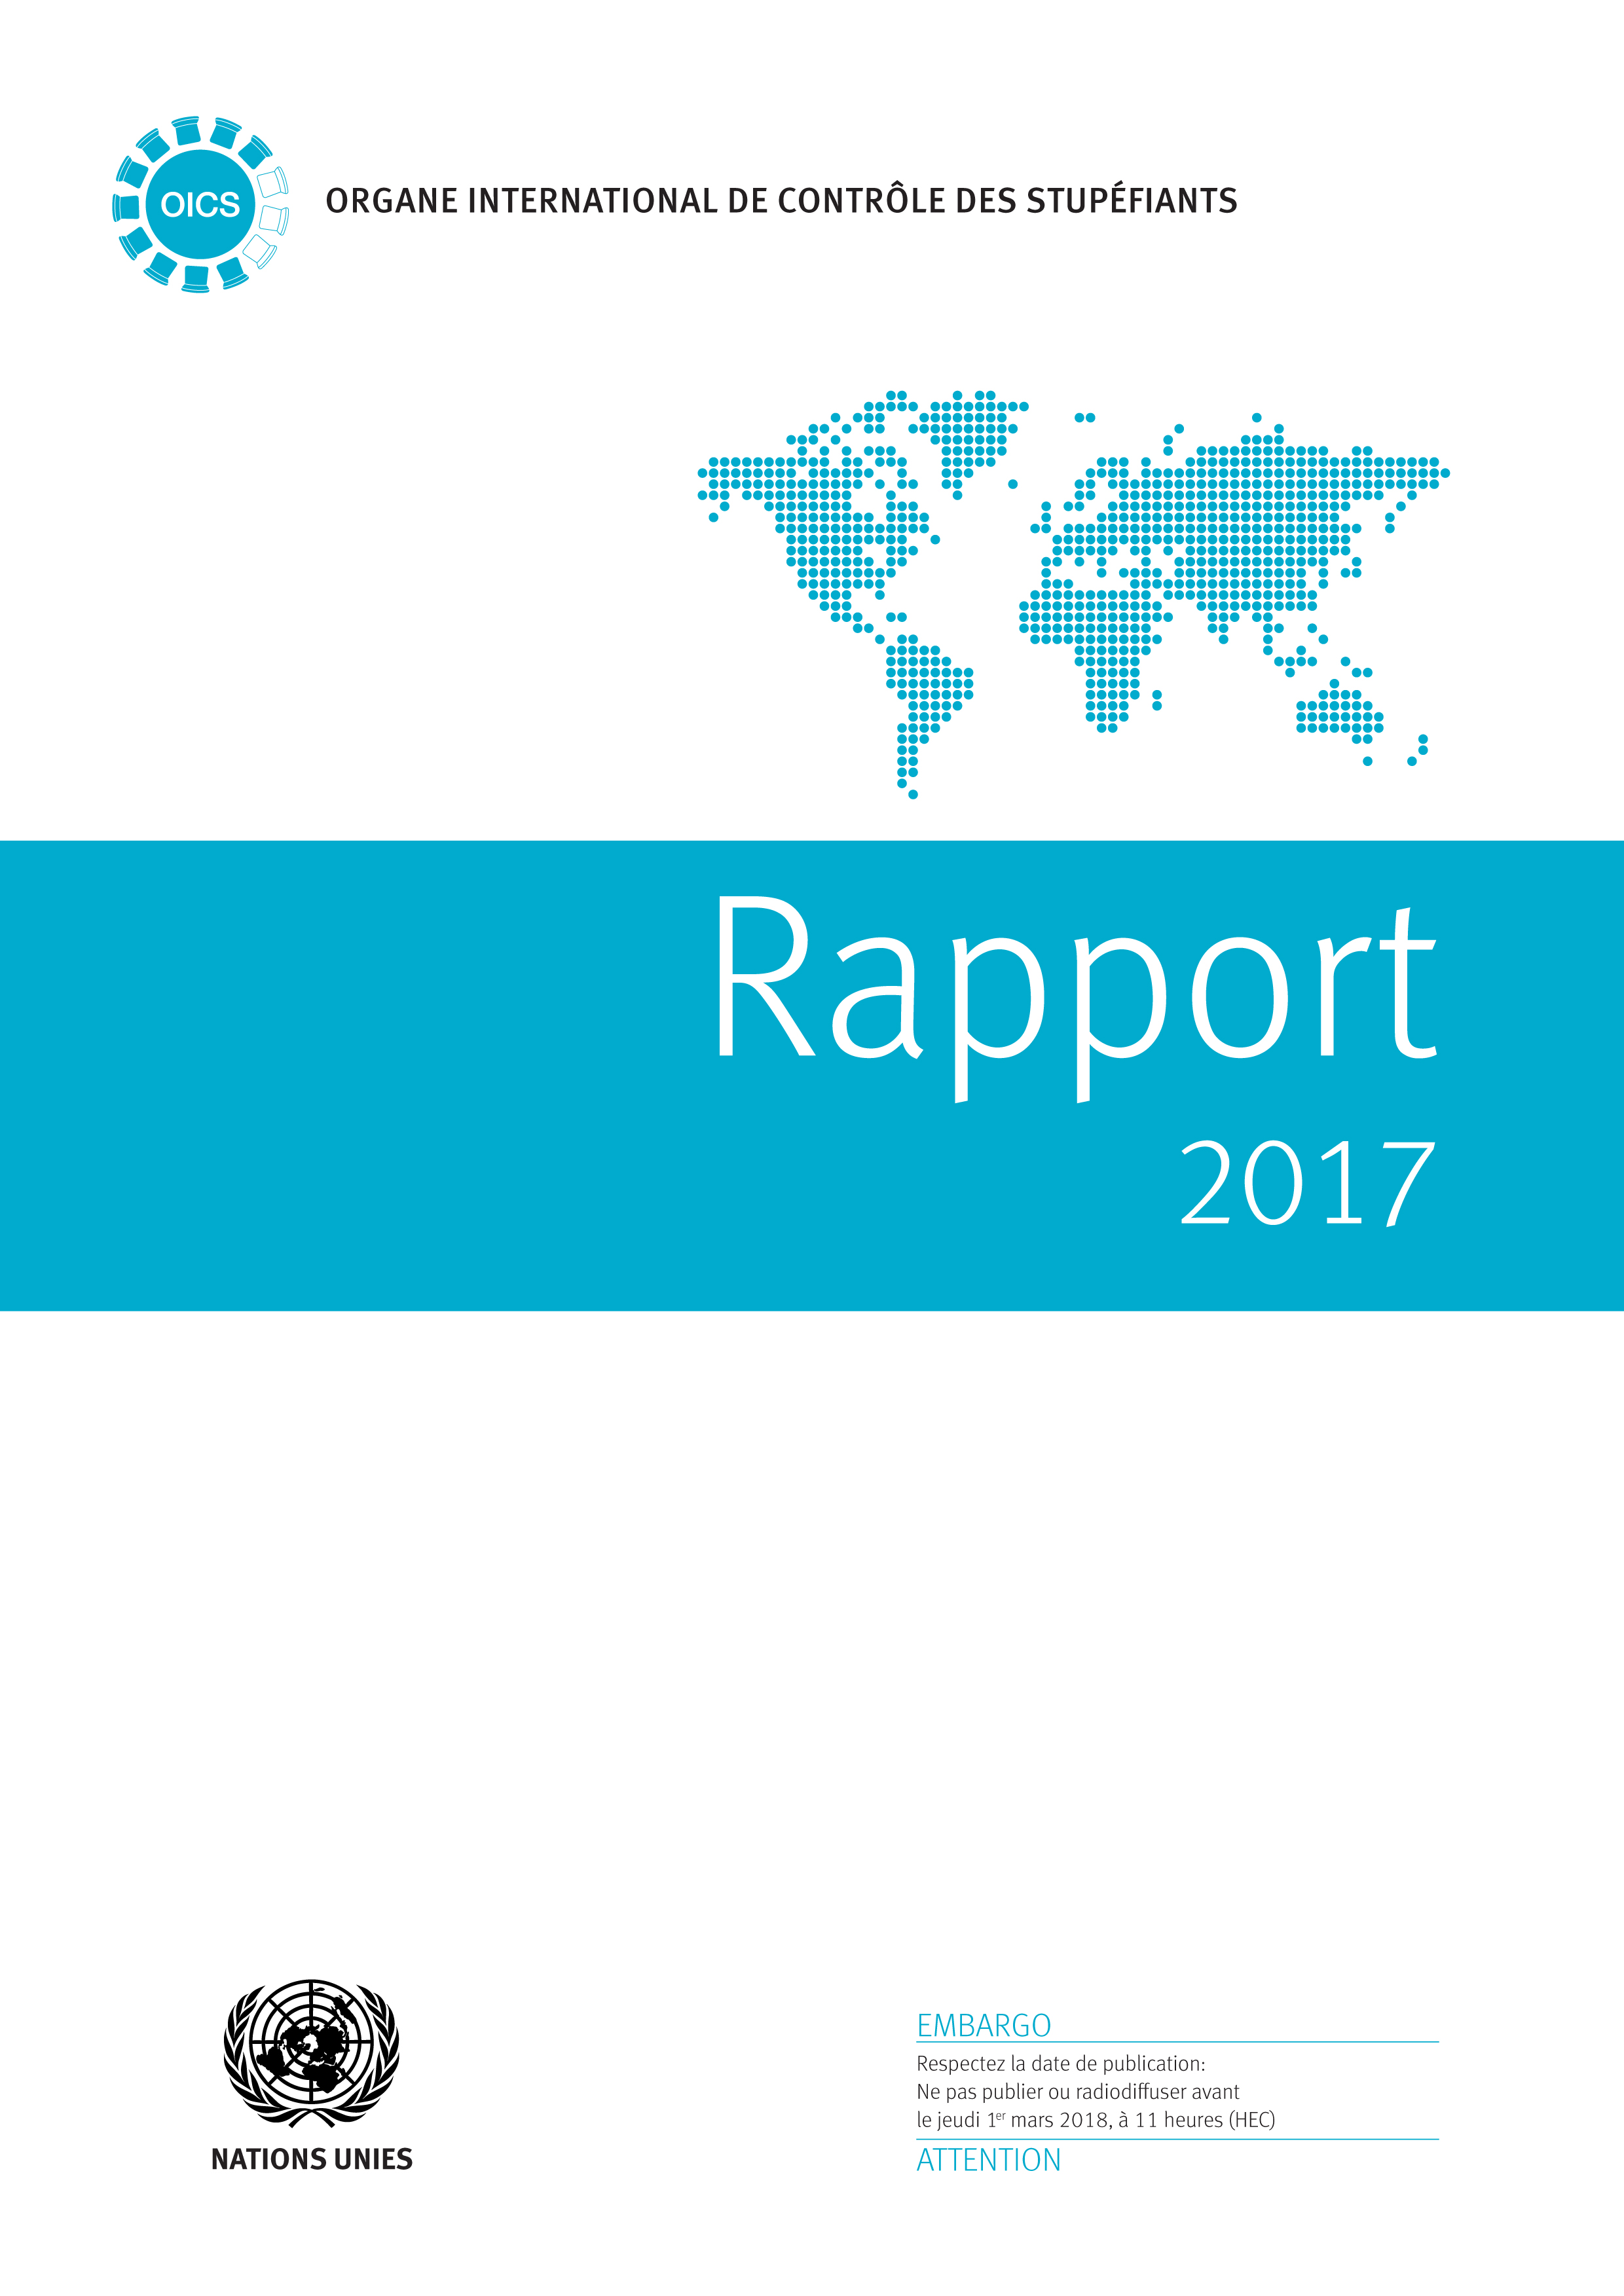 image of Groupes régionaux et sous-régionaux figurant dans le rapport de l’Organe international de contrôle des stupéfiants pour 2017